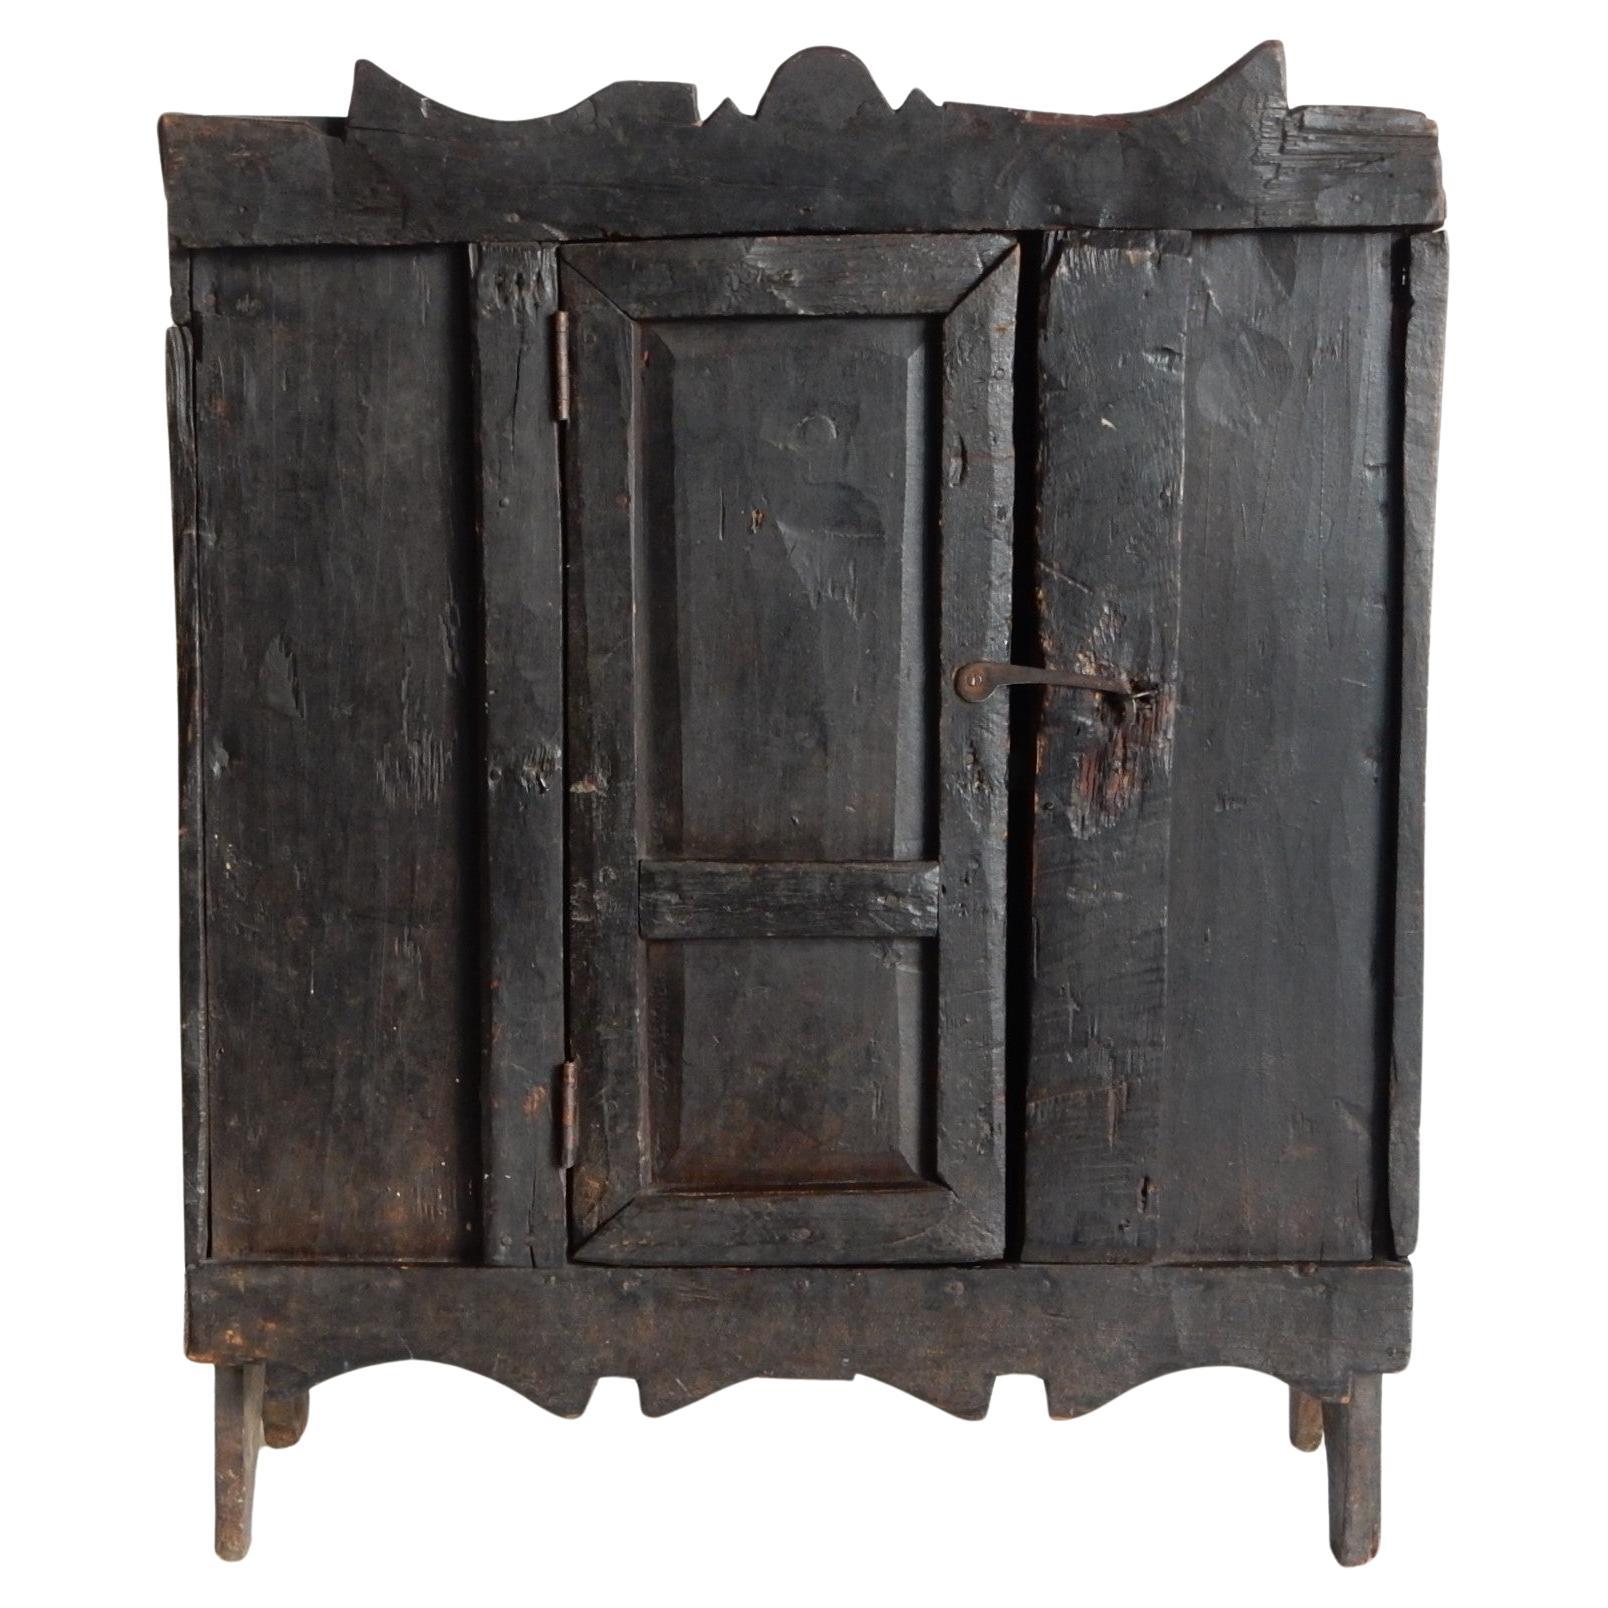 Petite armoire rustique Folk Art Travail Populaire. 19ème siècle.
Cette armoire est à la fois une sculpture et une pièce fonctionnelle.
Un grand nombre de caractéristiques dans son état d'origine.